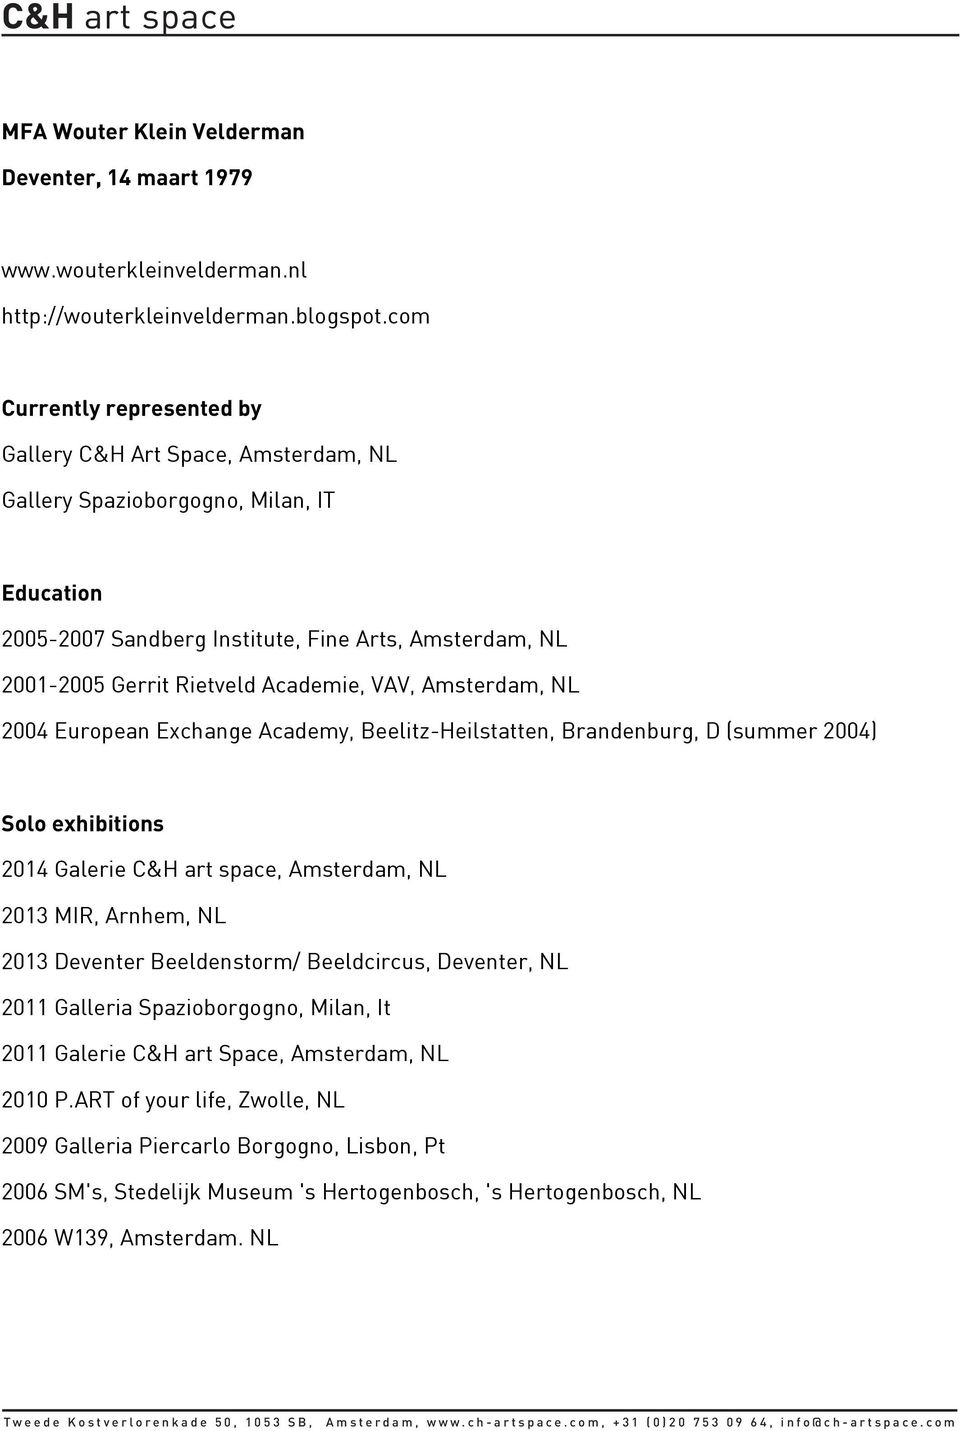 Academie, VAV, Amsterdam, NL 2004 European Exchange Academy, Beelitz-Heilstatten, Brandenburg, D (summer 2004) Solo exhibitions 2014 Galerie C&H art space, Amsterdam, NL 2013 MIR, Arnhem, NL 2013